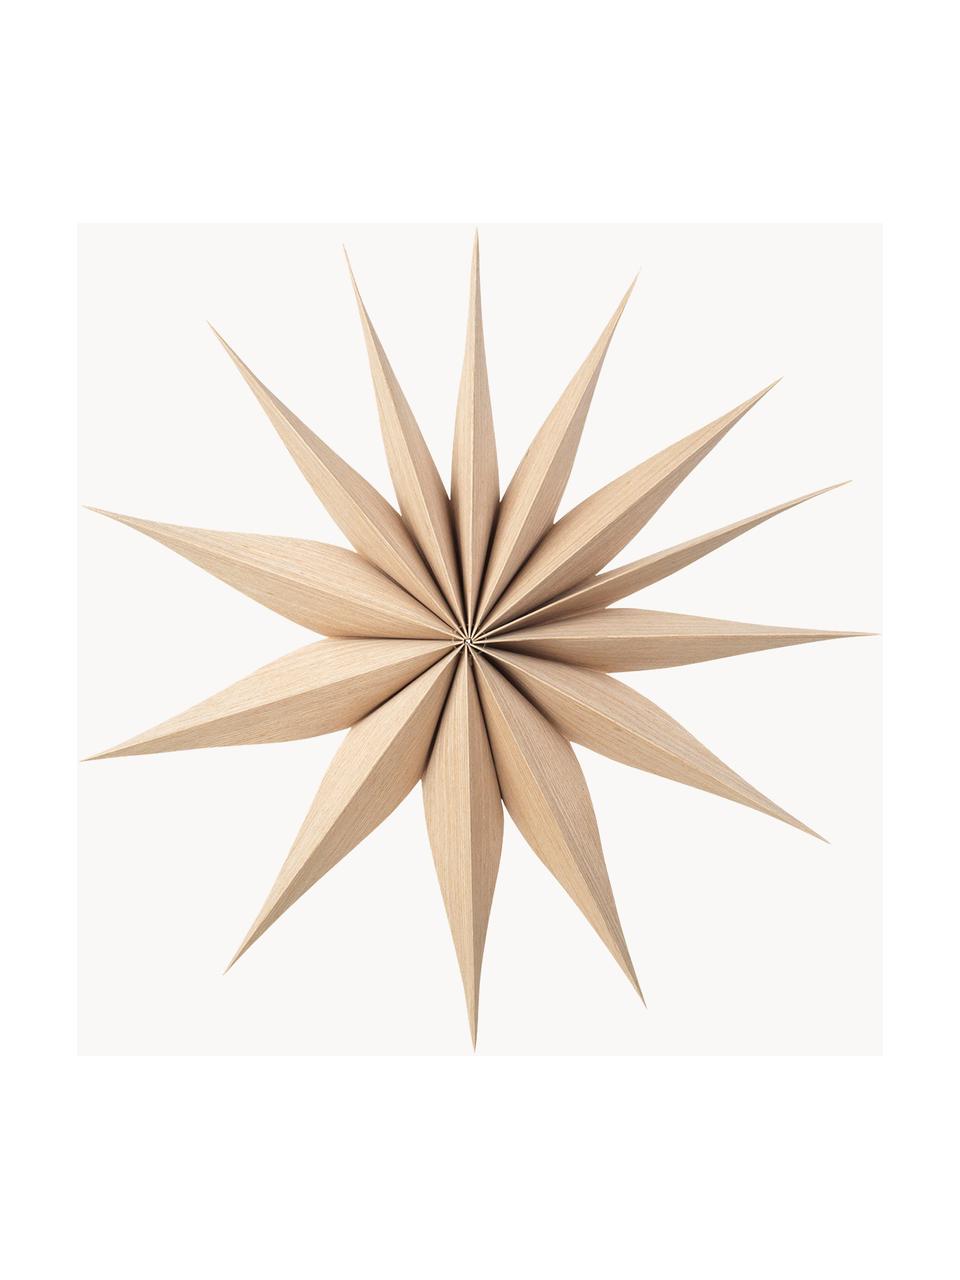 Deko-Sterne Venice aus Holz, 2 Stück, Pappelholz, Helles Holz, Ø 40 cm